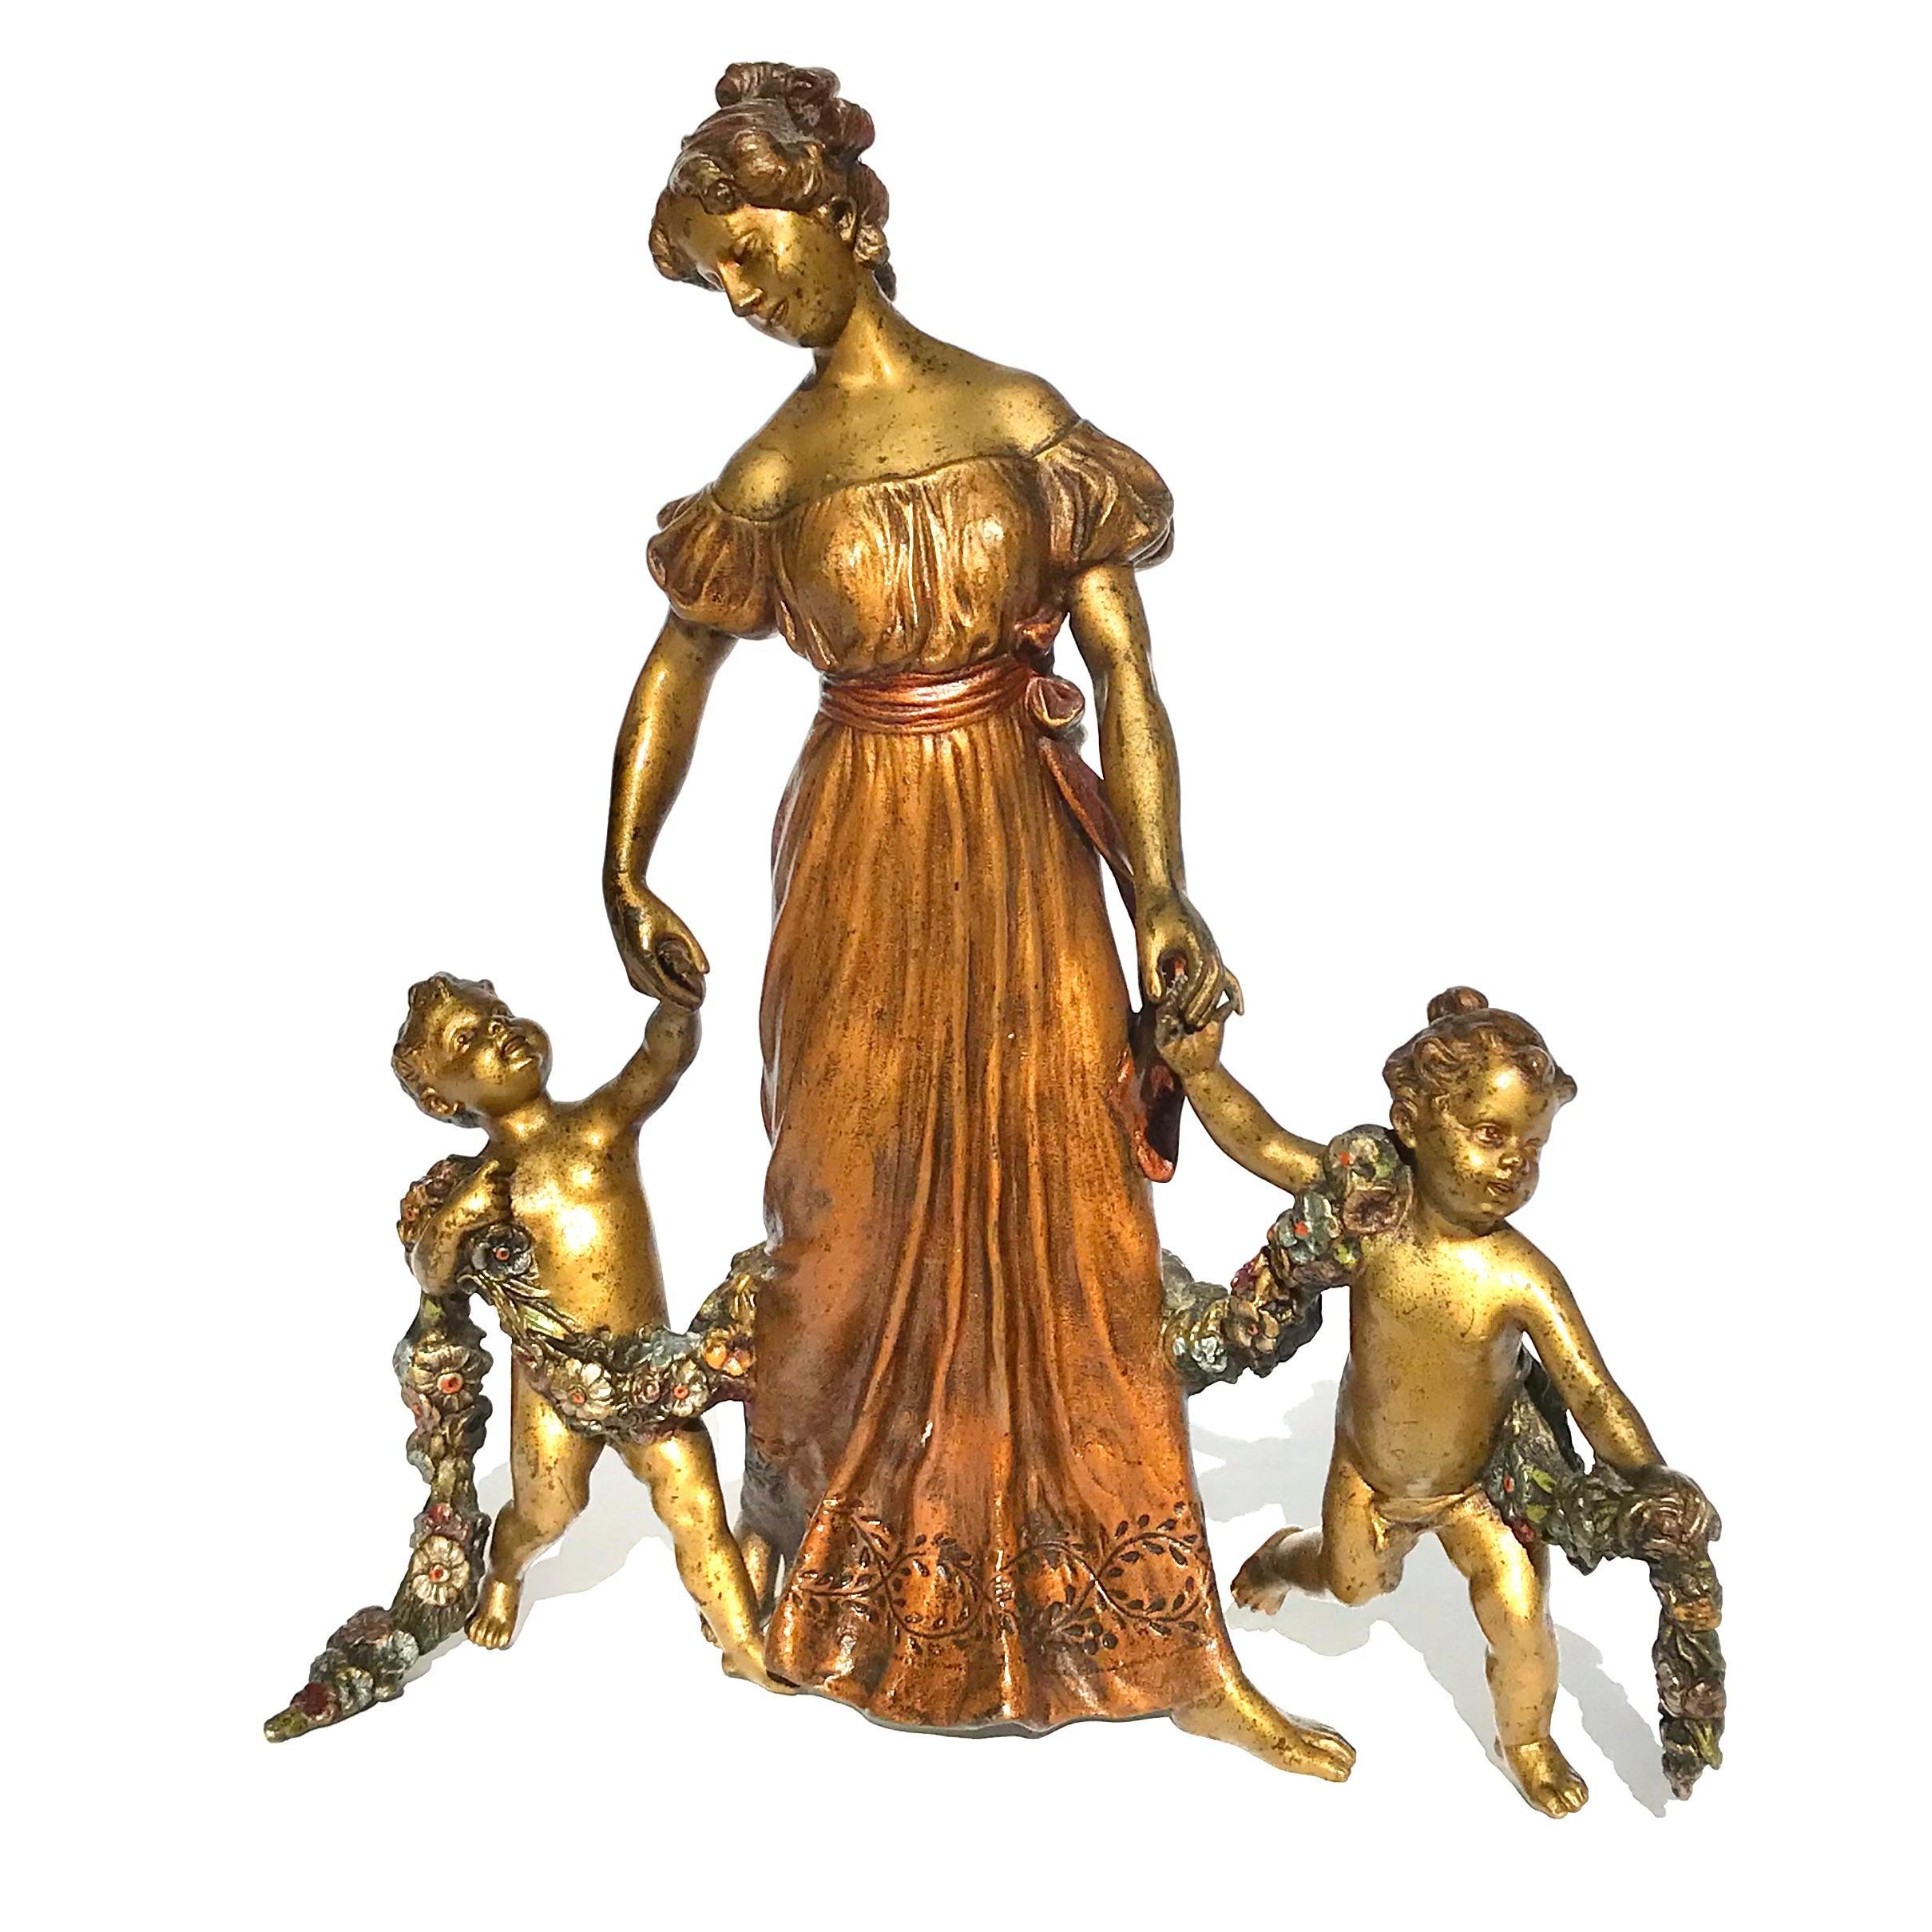 Franz Bergman Gruppi figurativi parziali in bronzo dorato e dipinto a freddo comprendenti una madre e i suoi figli. Il ragazzo e la ragazza nudi sono avvolti in una ghirlanda dipinta a freddo, tutti a piedi nudi. Uno straordinario gruppo figurato di